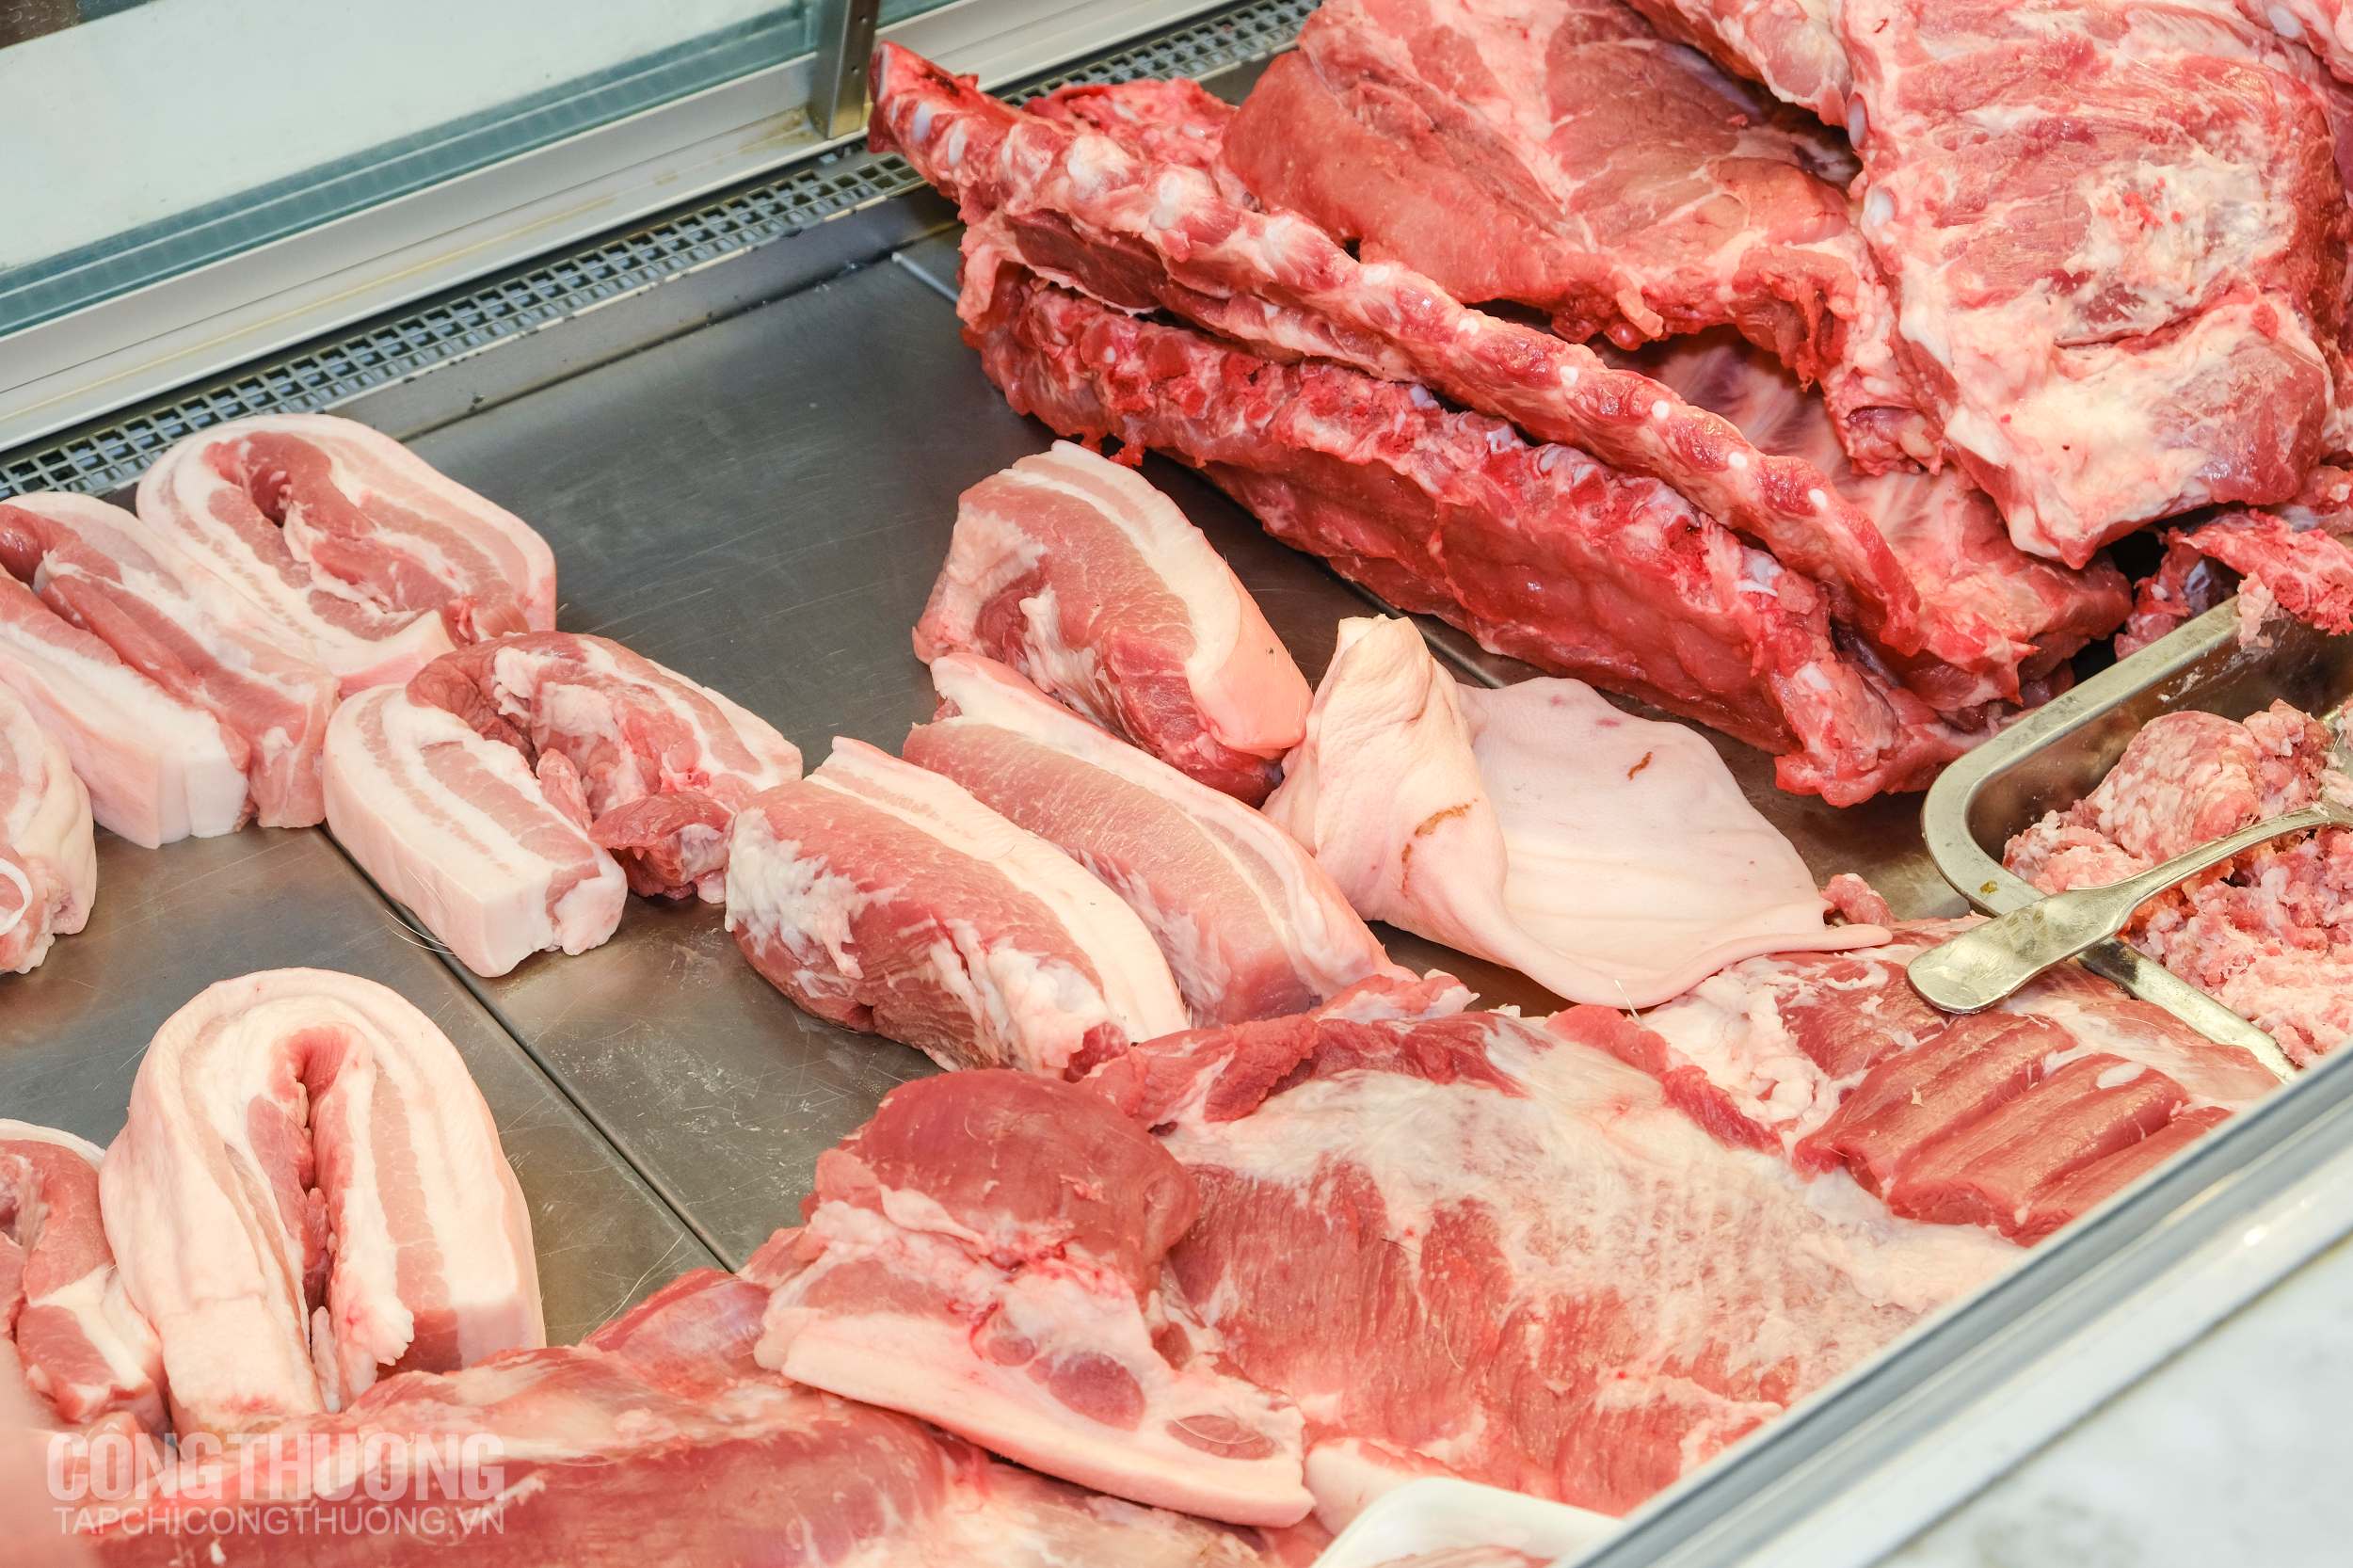 Mặt hàng thịt lợn đang là mối quan tâm của nhiều người tiêu dùng trong dịp Tết